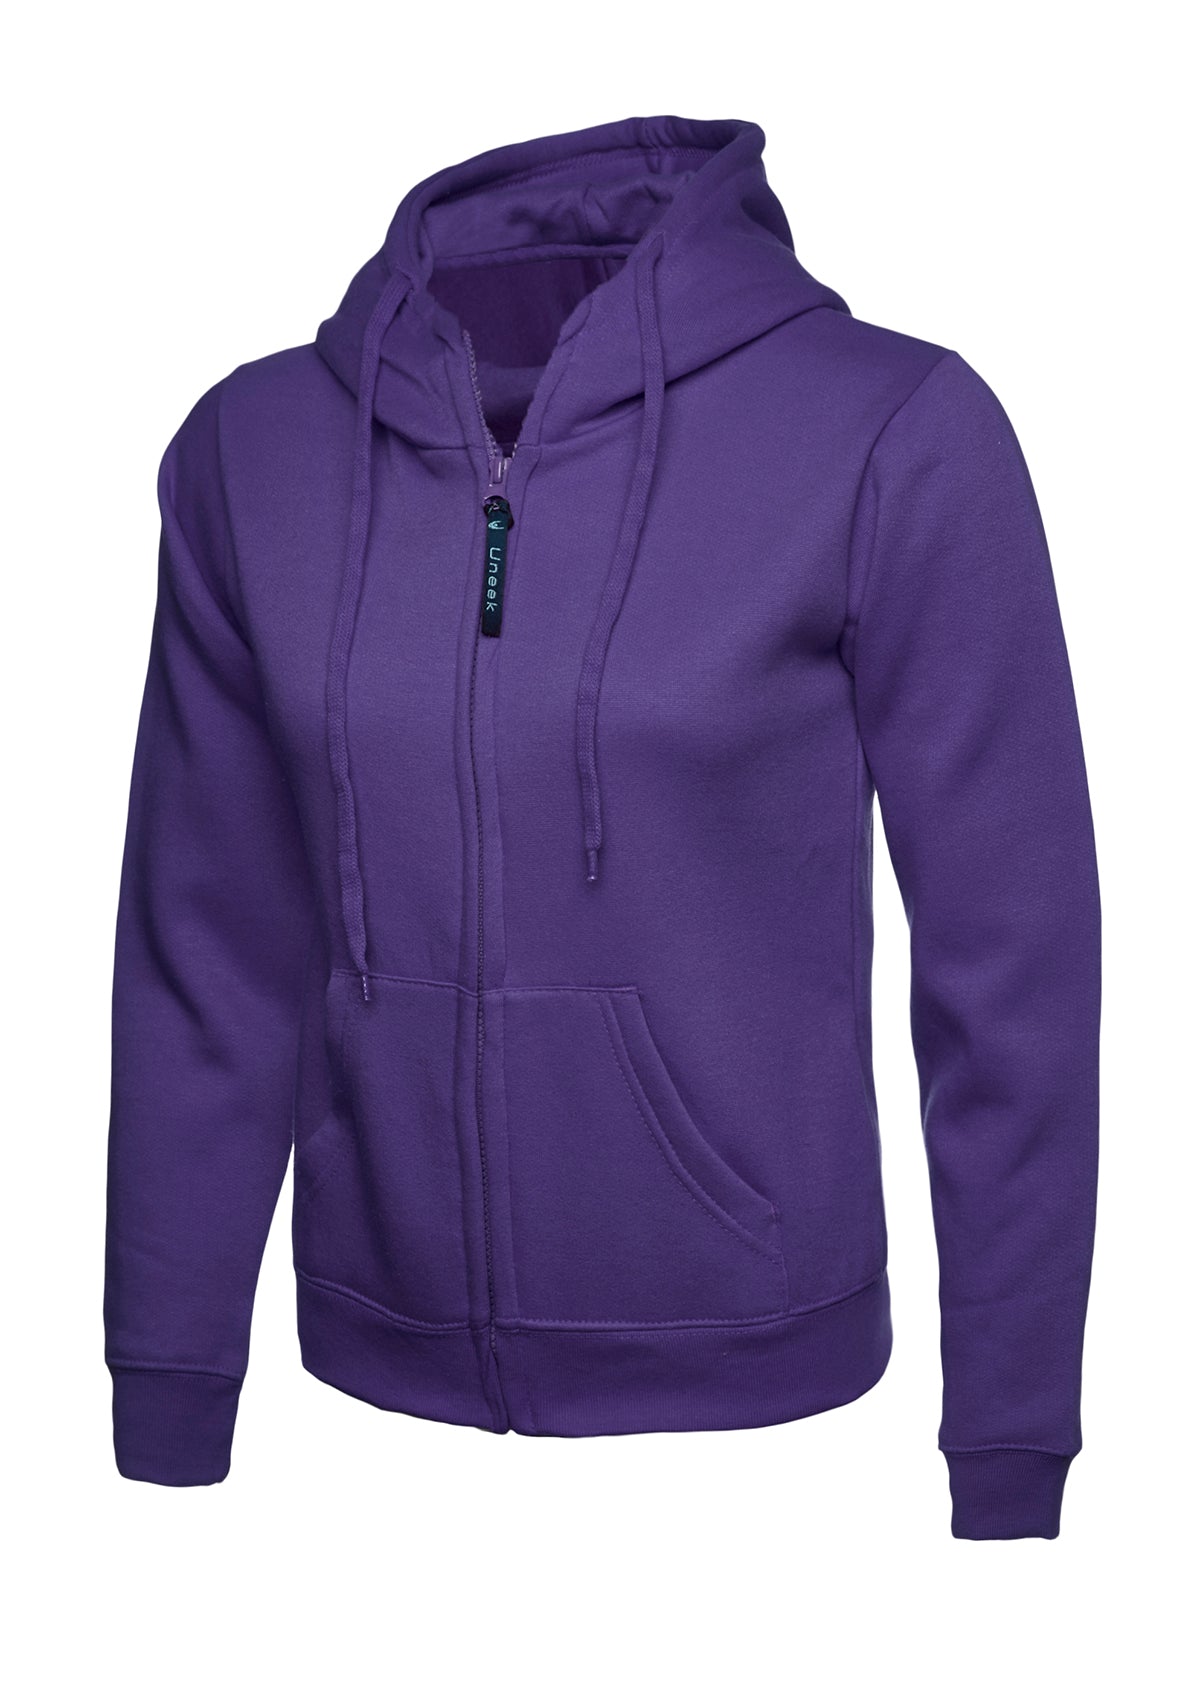 Uneek Ladies Classic Full Zip Hooded Sweatshirt UC505 - Purple